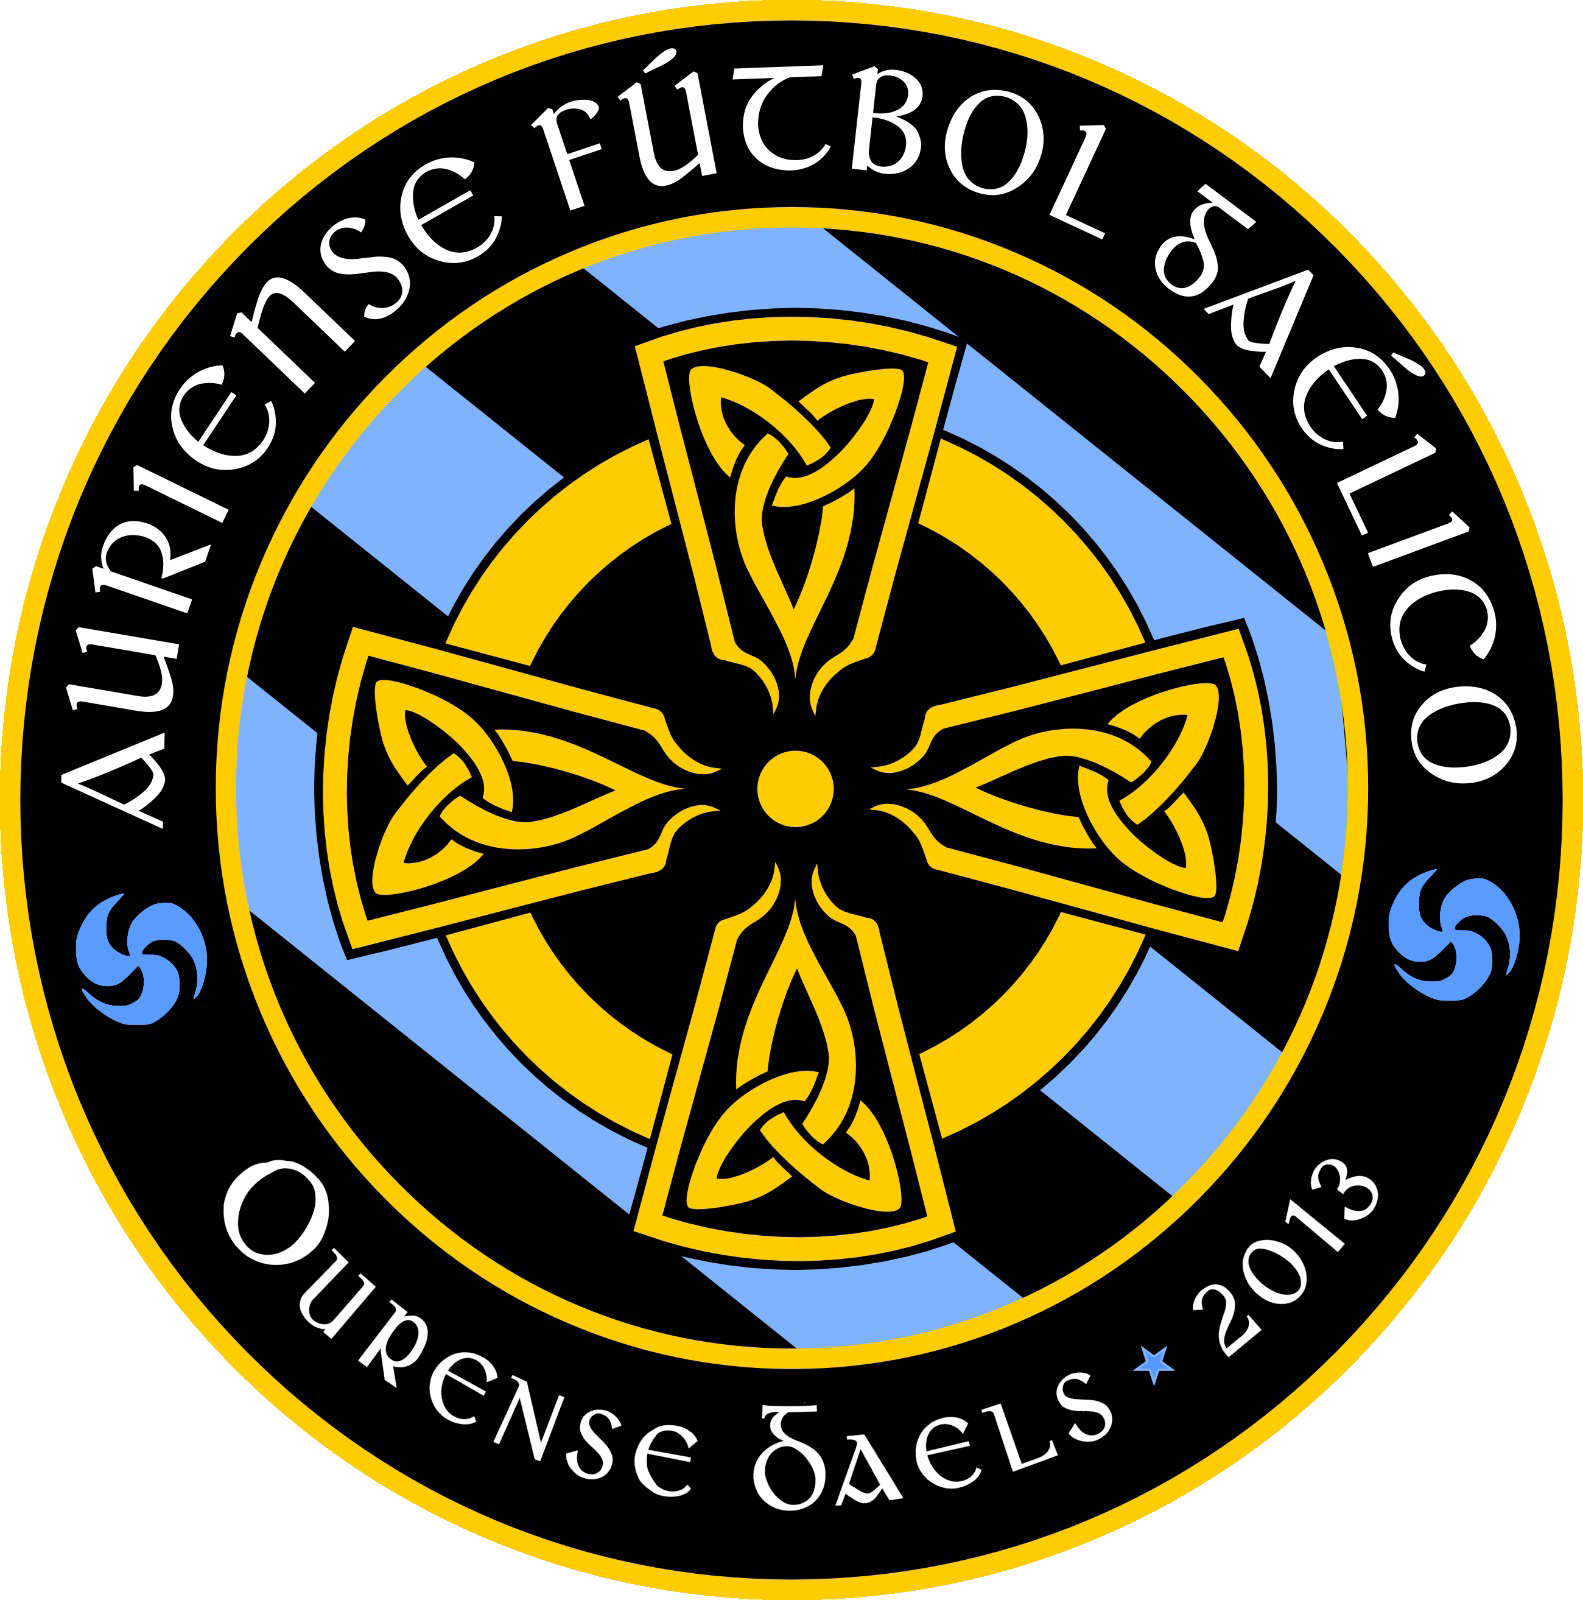 Auriense Gaelic Football